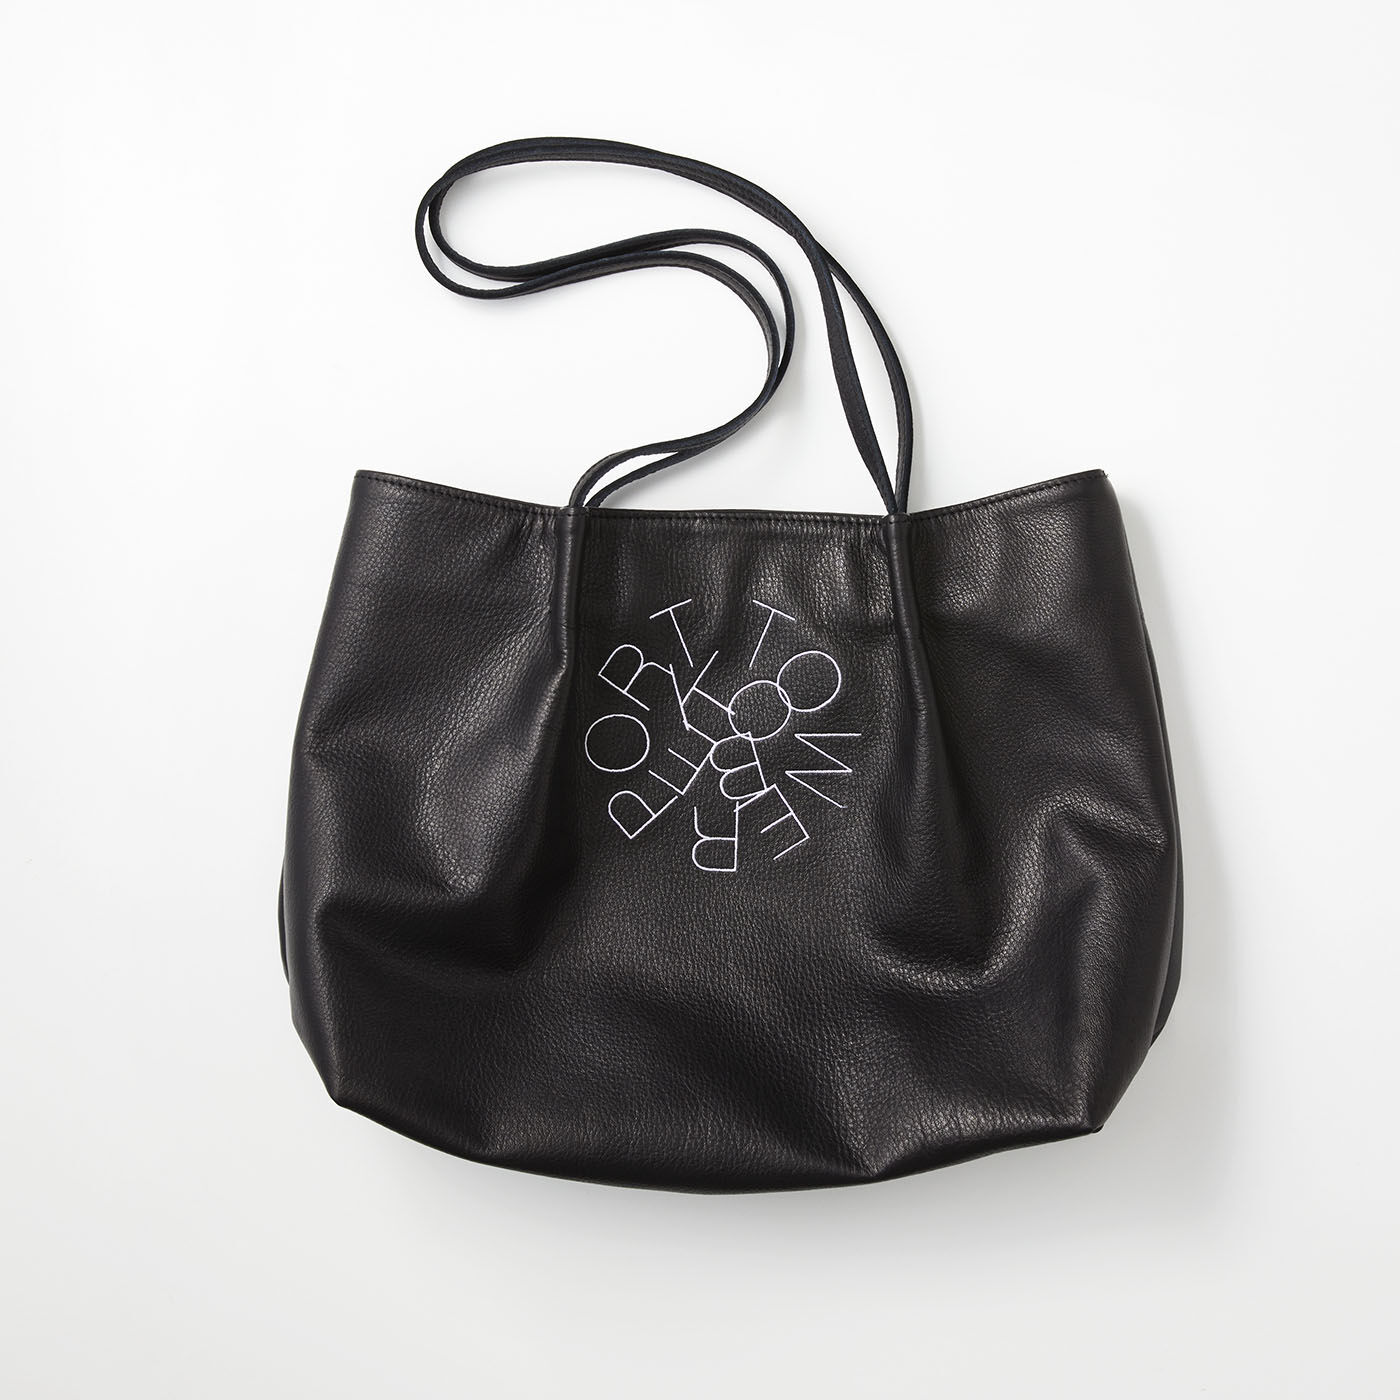 フェリシモコレクション|ブリリアンス神戸基金 KOBE PORT TOWER 福岡の鞄作家が作った 職人本革のカーポラヴォーロトート〈Black〉|手触りいい上質なソフトレザーに神戸ポートタワー公式ロゴの刺しゅうを施したスタイリッシュで大人顔のトートバッグ。